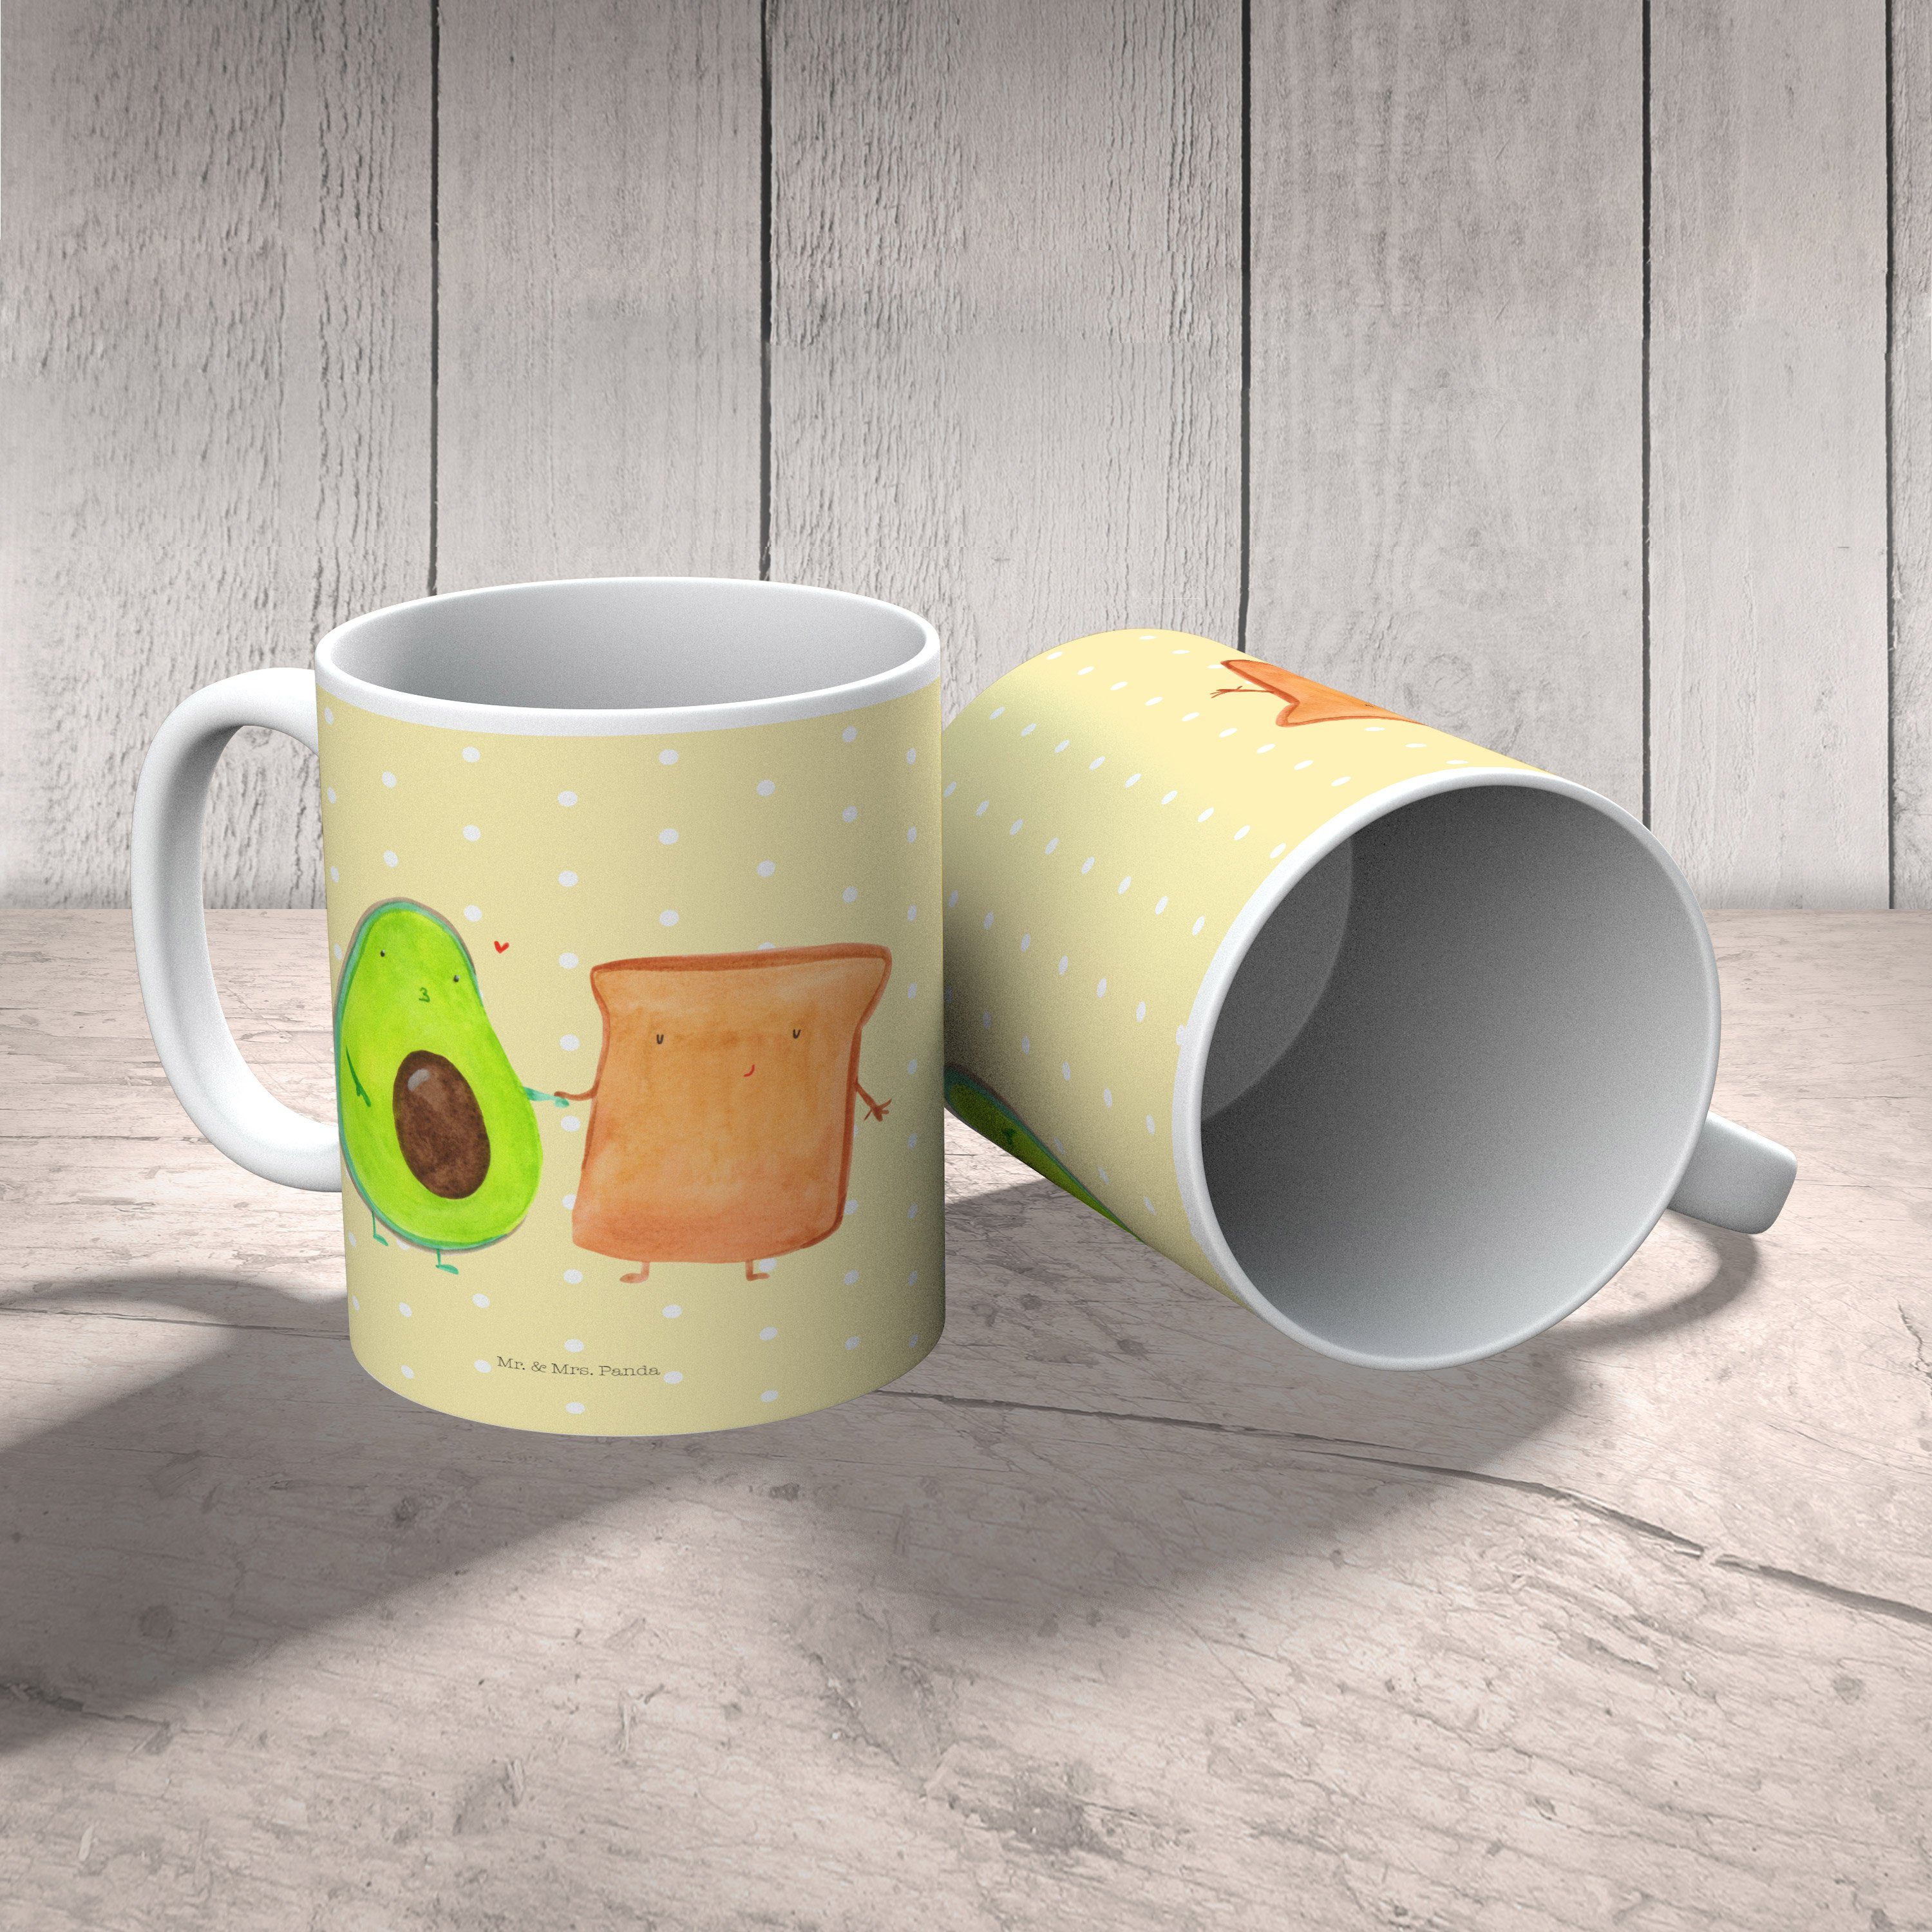 Mr. & Mrs. - Panda Avocado Toast Tasse - Verlobt, Pastell Veg, Gelb Geschenk, Kaffeebecher, + Keramik